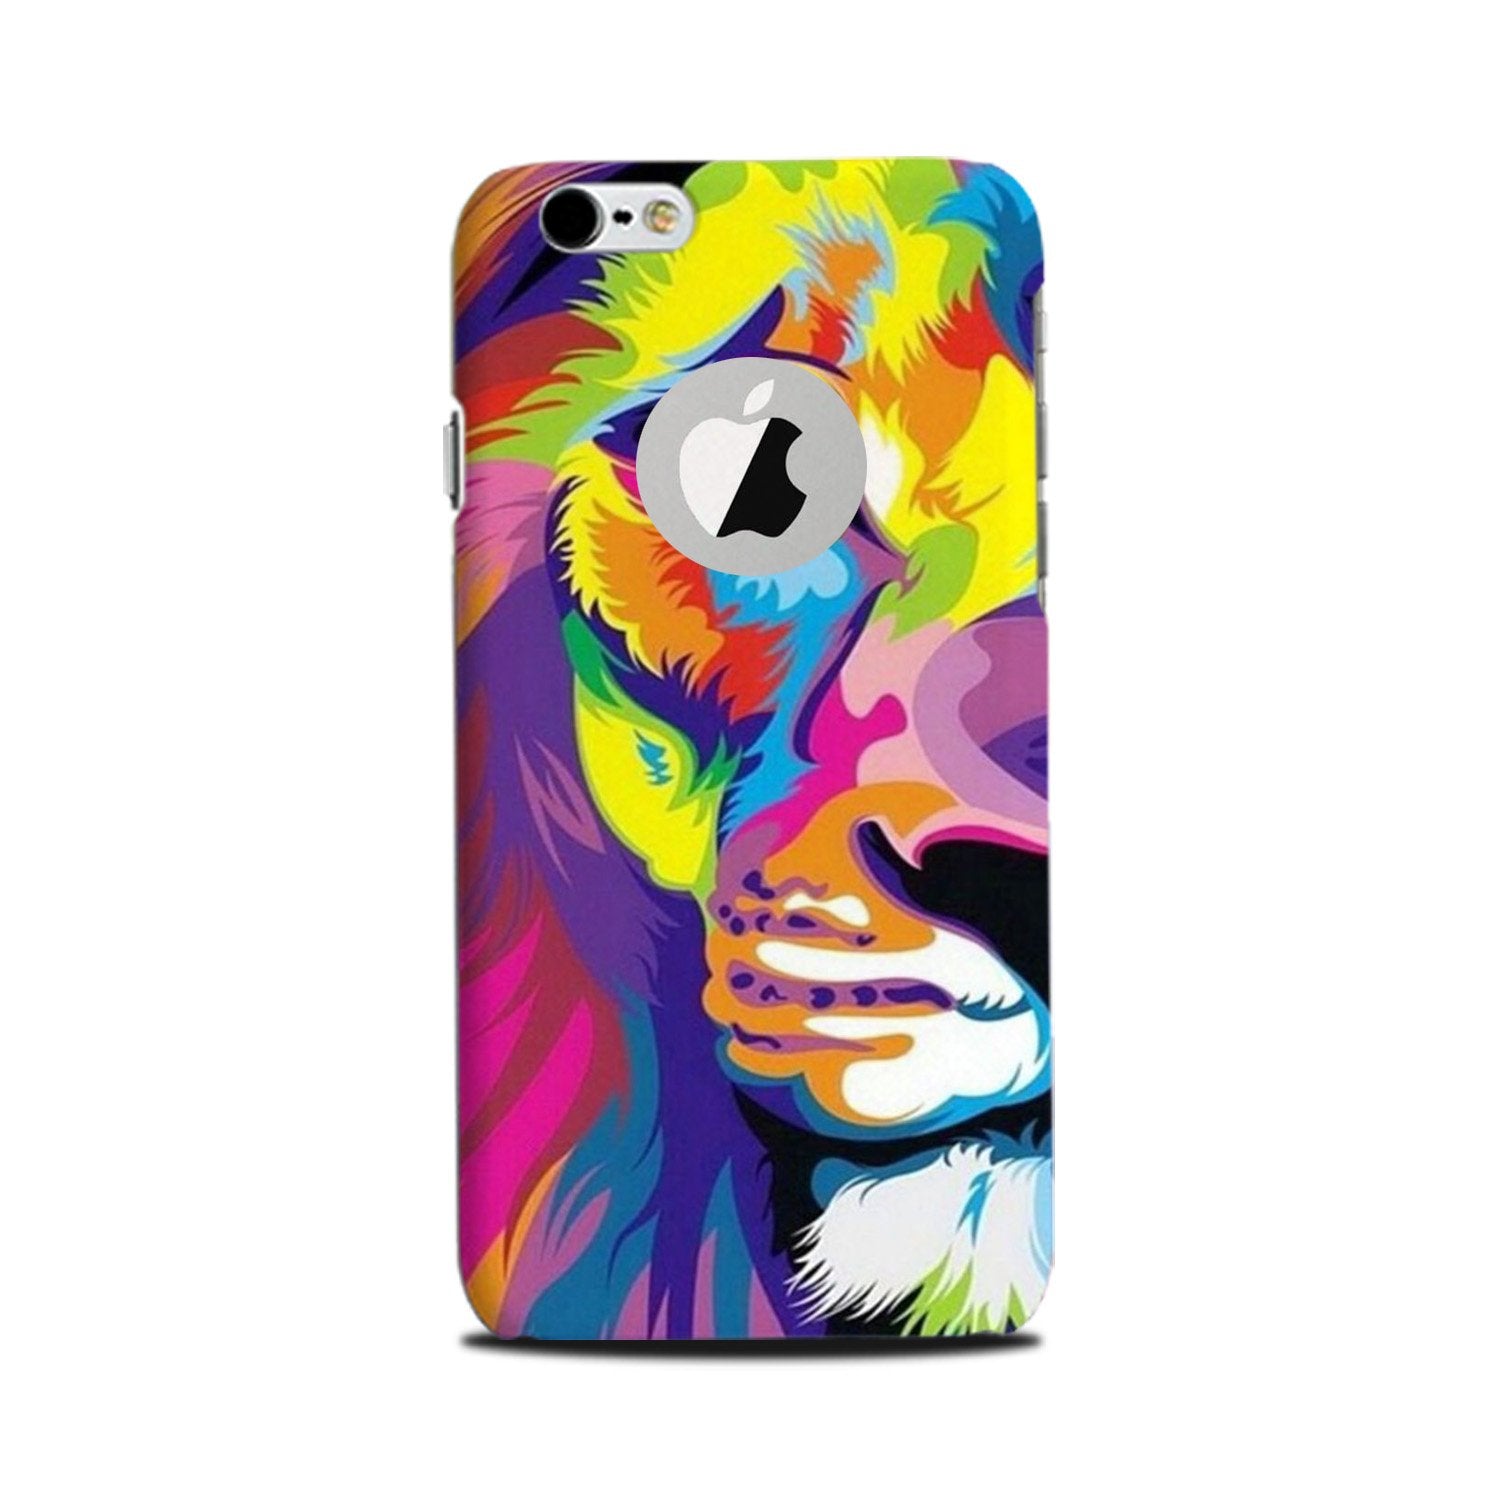 Colorful Lion Case for iPhone 6 Plus / 6s Plus logo cut   (Design - 110)